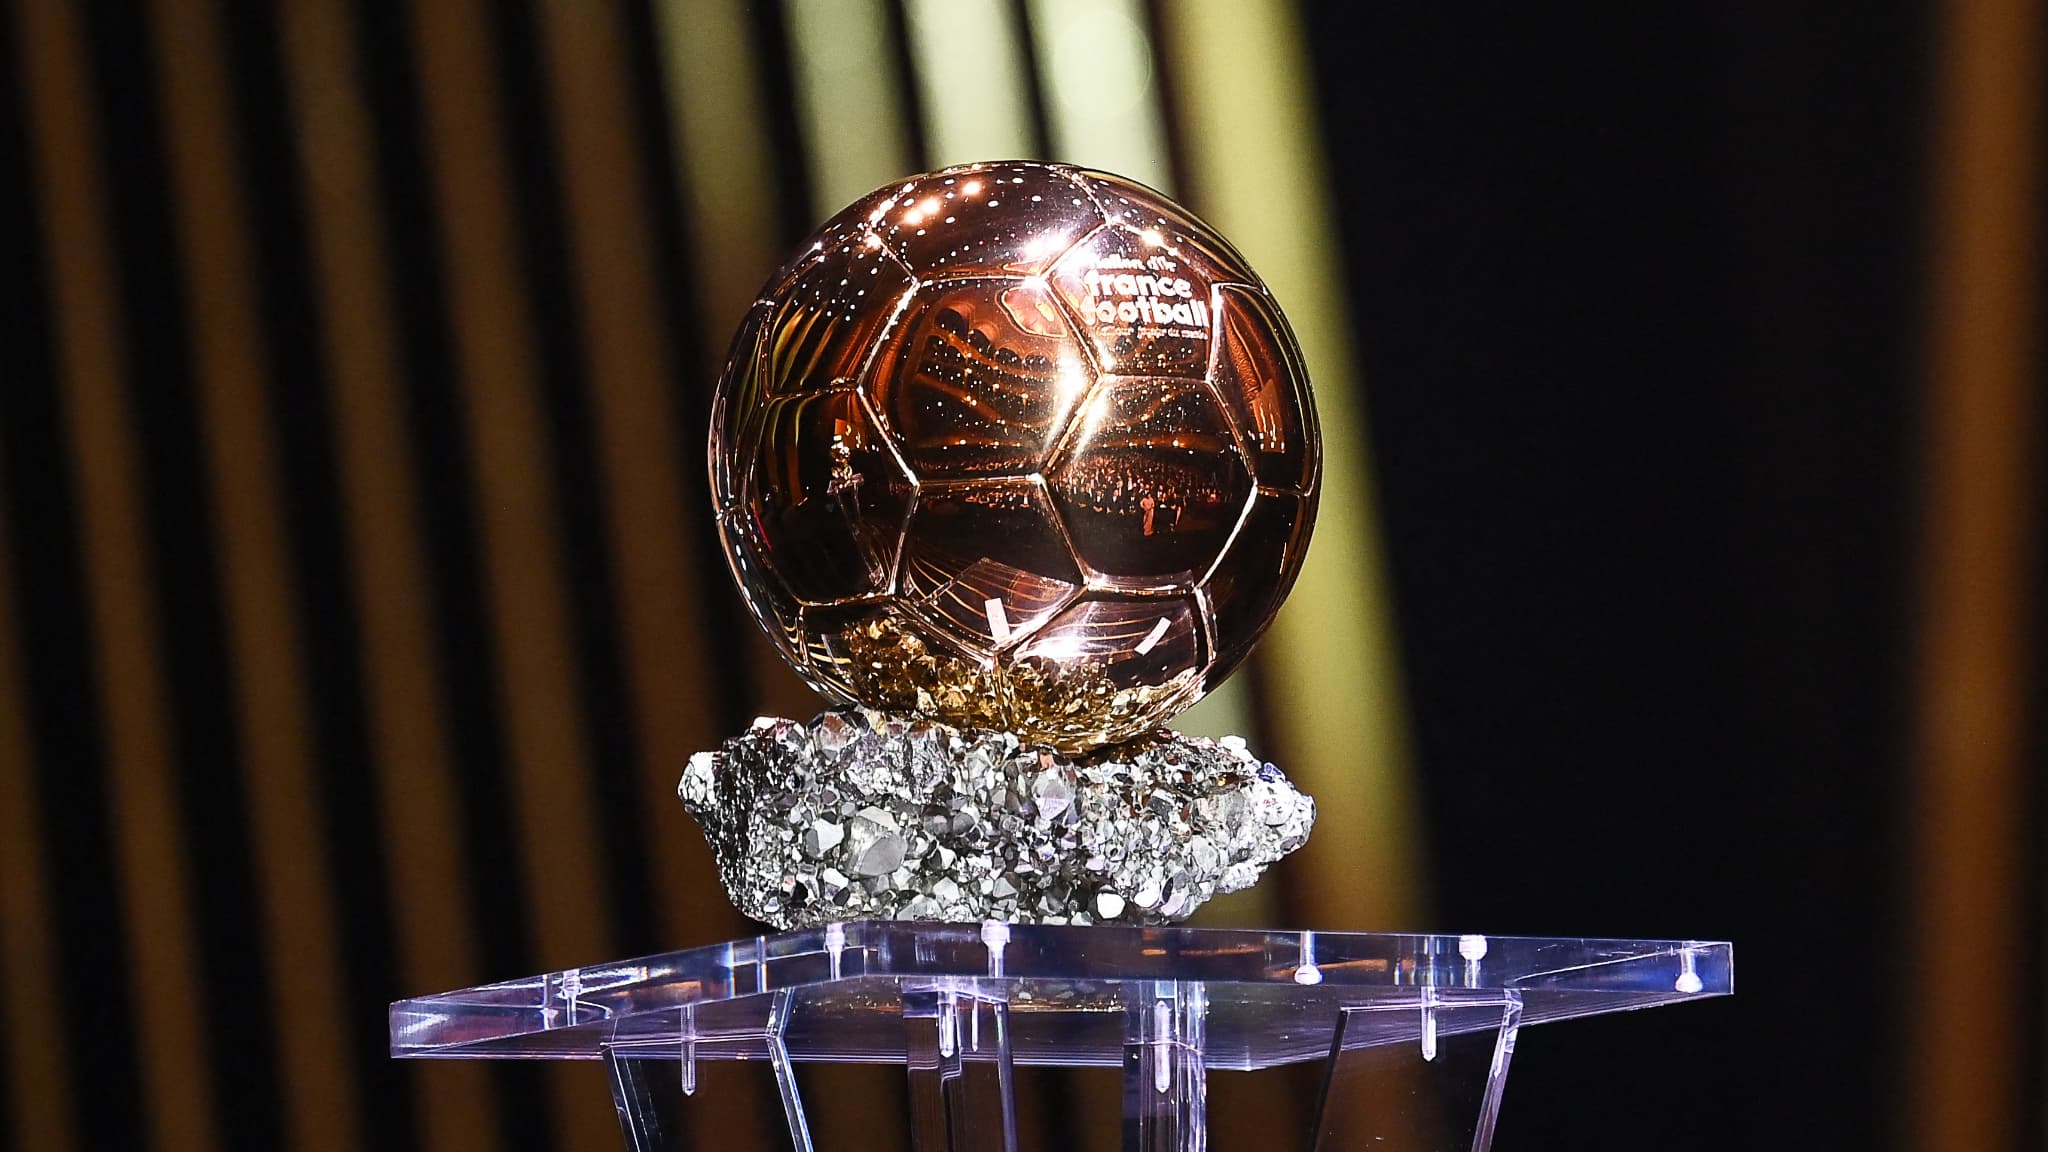 EN DIRECT - Ballon d'or: quatre Français dans la liste des 30, dont Mbappé  et Kolo Muani